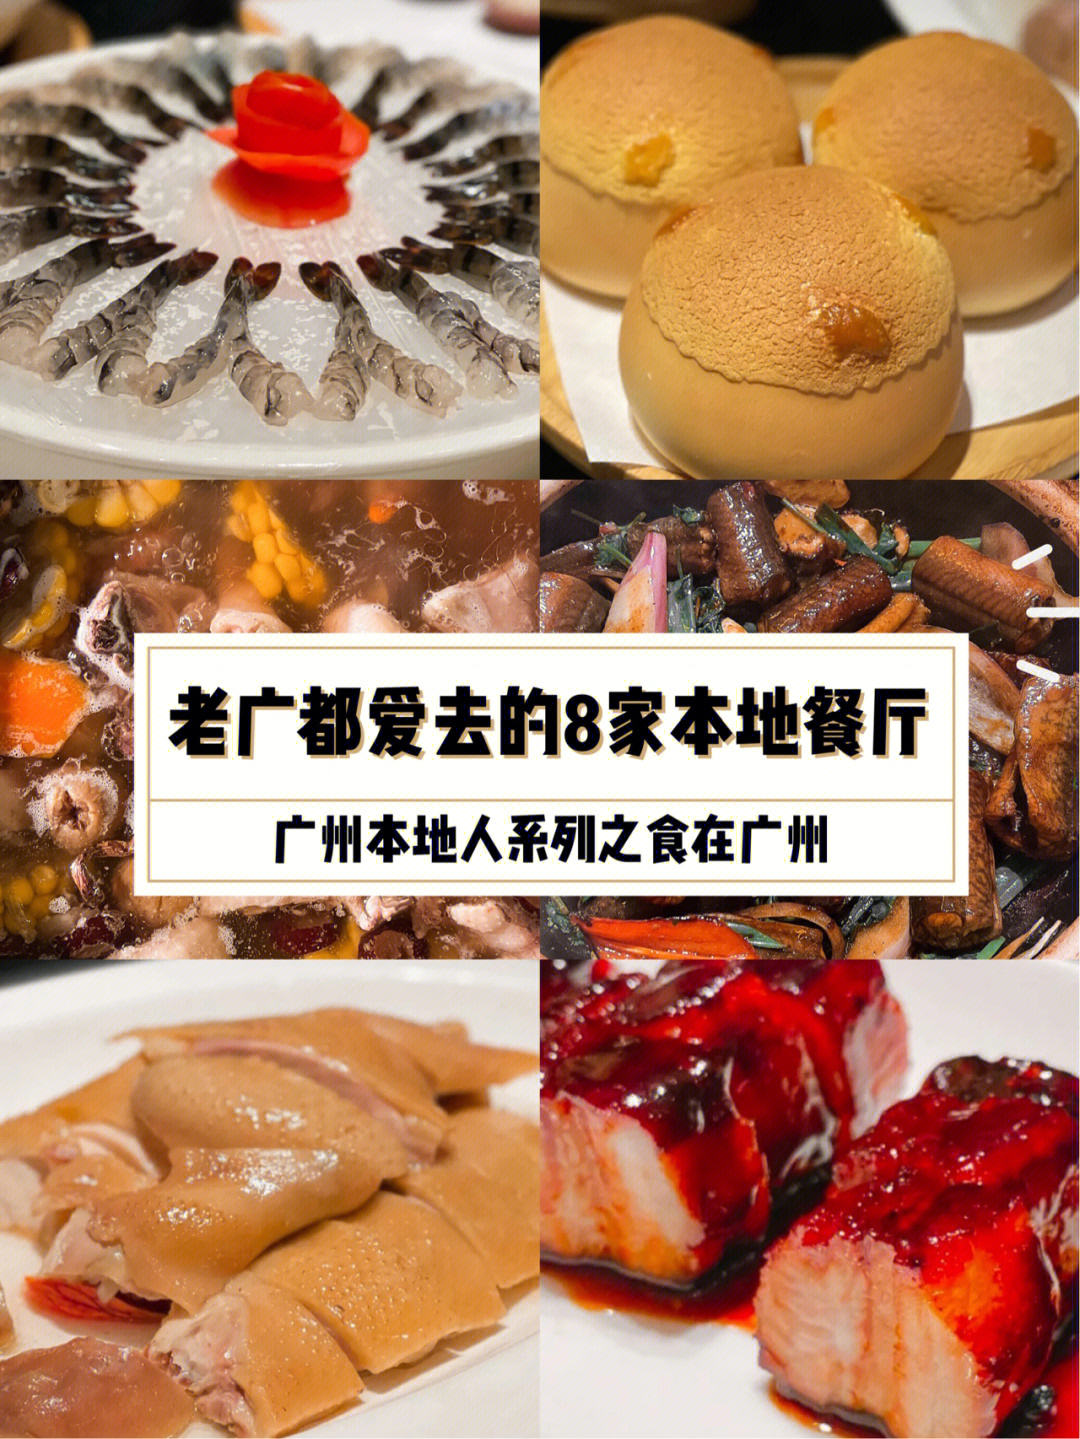 上海广州蕉叶餐厅_广州黄埔区清真餐厅_广州餐厅